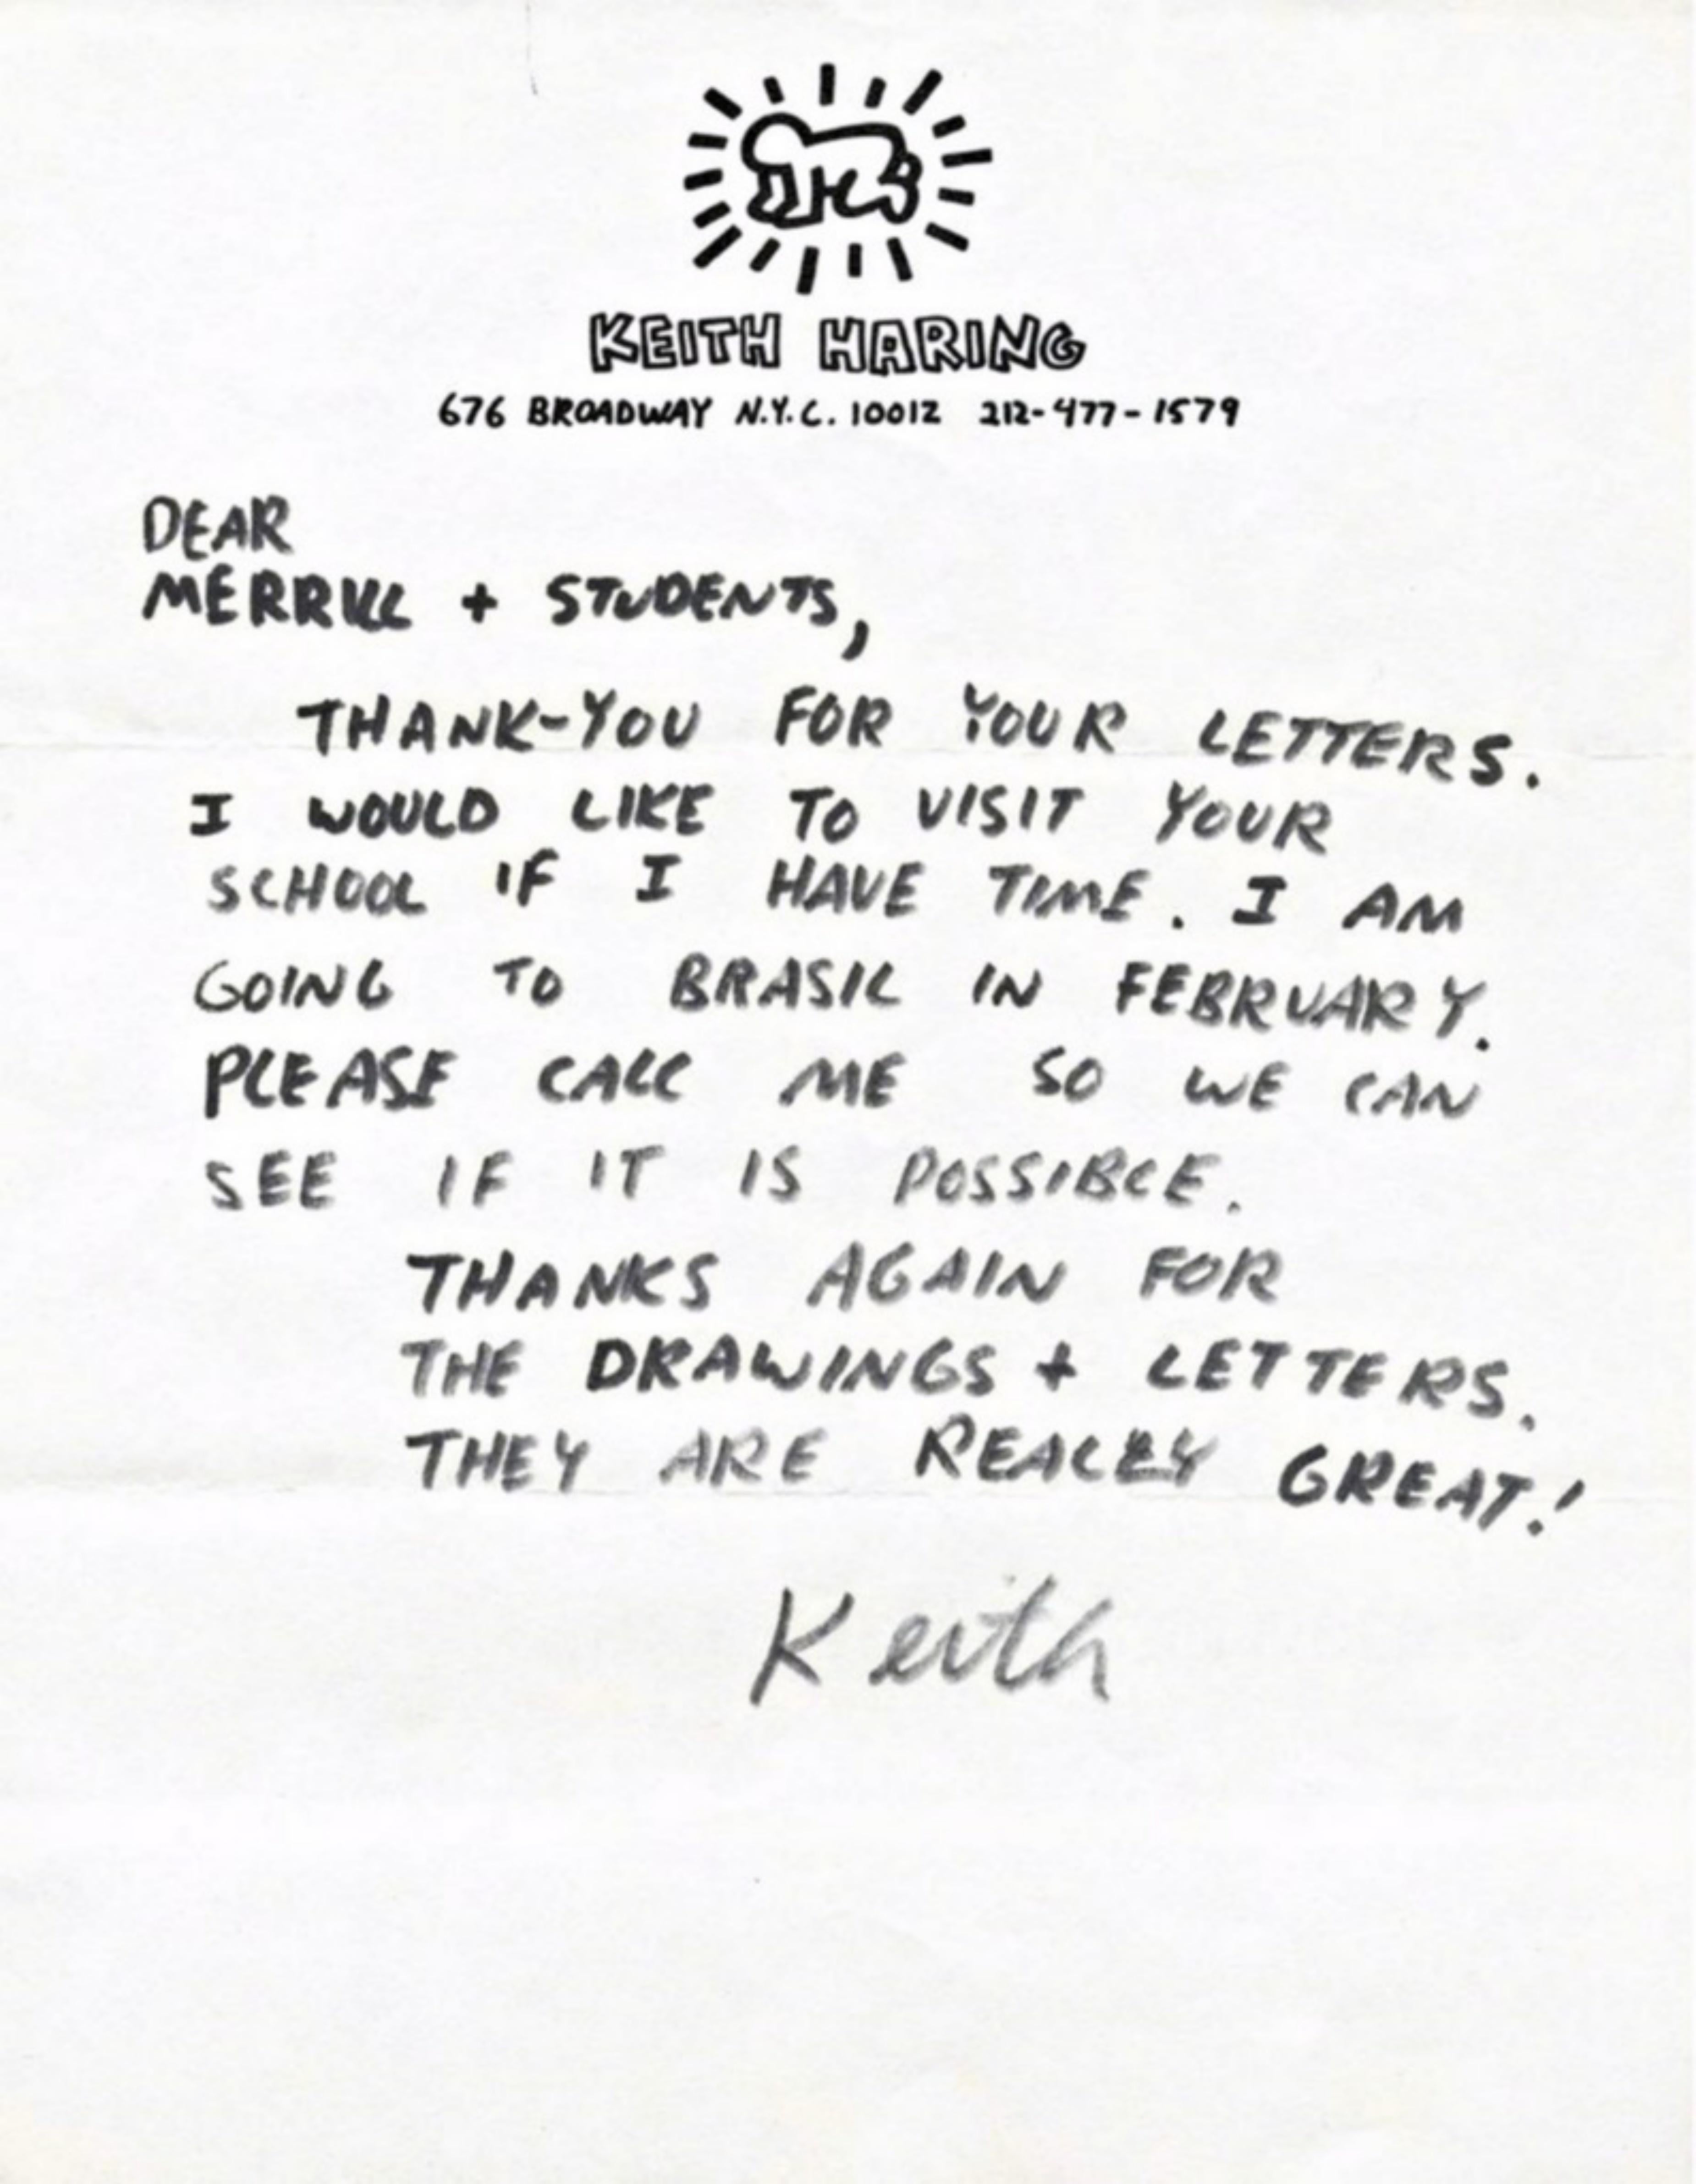 Keith Haring
Original handschriftlicher, handsignierter Brief, ca. 1987
Tinte auf Harings privatem Briefpapier, handgeschrieben und handsigniert von Keith Haring
11 × 8 1/2 Zoll
Ungerahmt
Einzigartiges Original: charmanter handgeschriebener und